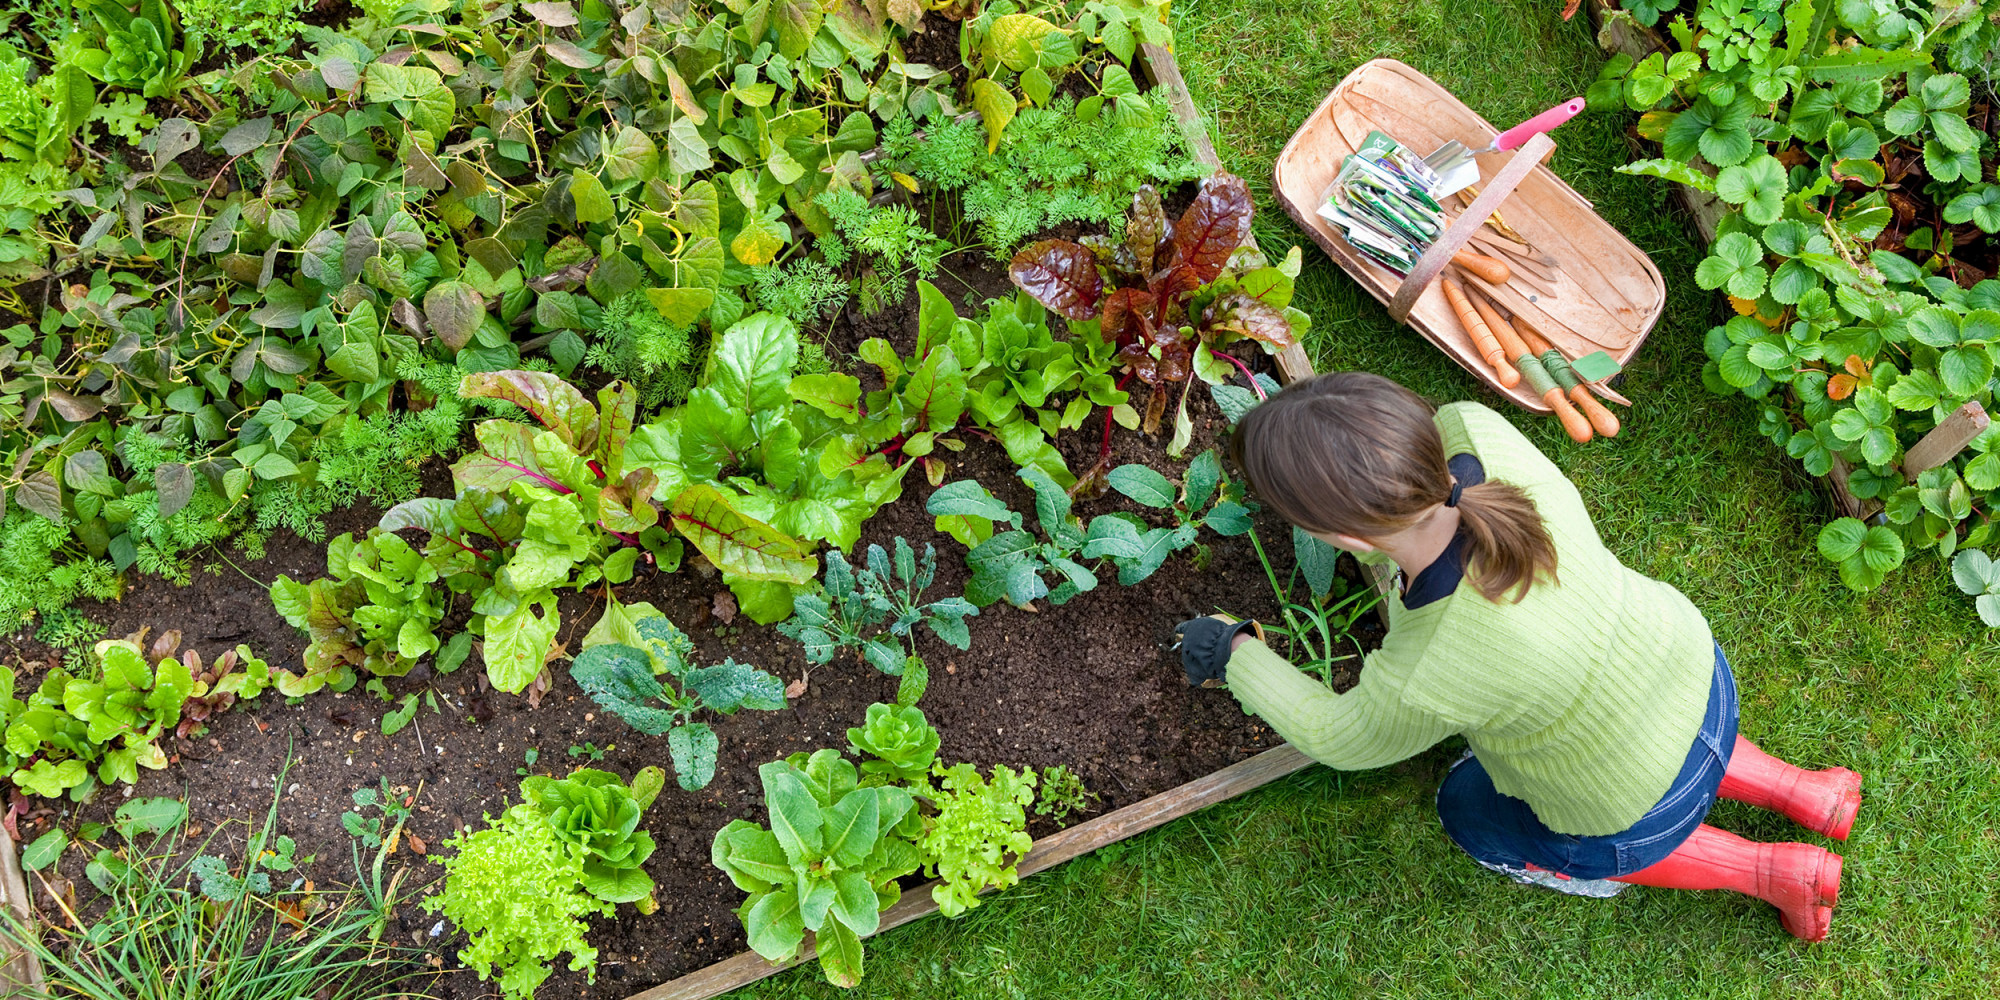 Bố trí giường trong vườn Ở hầu hết các vùng, công việc tích cực tạo luống trong vườn tốt nhất nên bắt đầu vào mùa xuân, ngay khi đất đủ ấm để có thể xới đất. Bước đầu tiên là bố trí luống vườn trên khu vực bãi cỏ. Điều này có thể được thực hiện bằng cách phun sơn, phấn bột hoặc sử dụng vòi làm vườn linh hoạt để phác thảo luống vườn trên bãi cỏ.  Một luống vườn có thể có kích thước bất kỳ theo ý muốn của bạn, nhưng một sai lầm phổ biến là quy hoạch một khu vườn quá nhỏ. Tất nhiên, sau đó bạn luôn có thể mở rộng khu vườn, nhưng tốt hơn hết là bạn nên tạo một luống vườn rộng rãi, đẹp đẽ ngay từ đầu. Một chiếc giường sâu 5 hoặc 6 feet và dài 10 hoặc 12 feet nên được coi là tối thiểu. Bạn có thể tạo ra khu vườn của mình theo bất kỳ hình dạng nào bạn muốn, nhưng hầu hết các nhà thiết kế đều khuyên rằng khu vườn hình bầu dục hoặc hình quả thận sẽ có tính thẩm mỹ cao nhất.